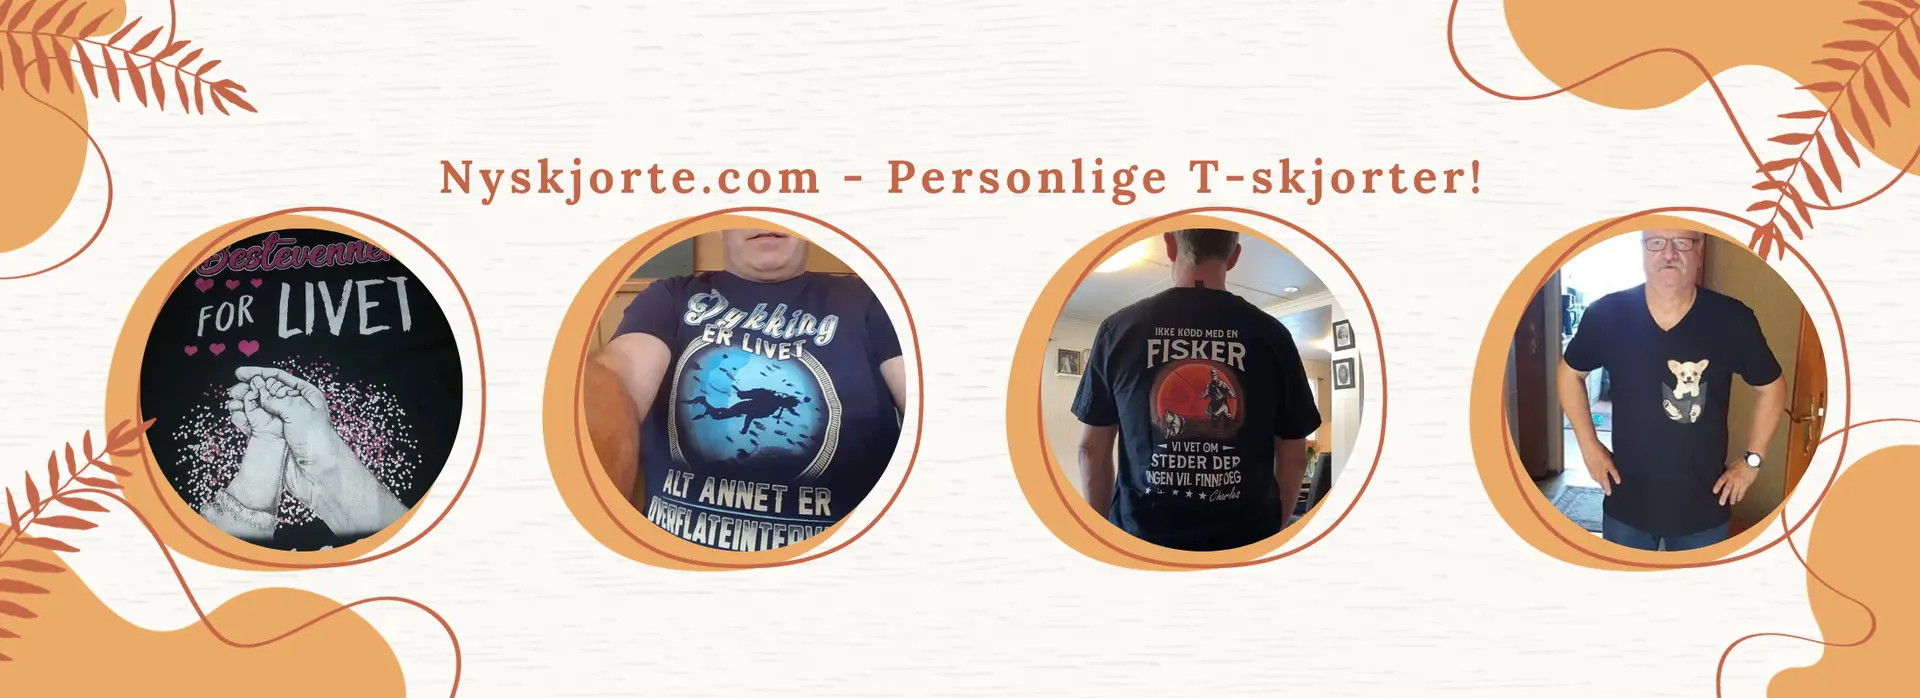 Banner for Nyskjorte.com | Personlige T-skjorter